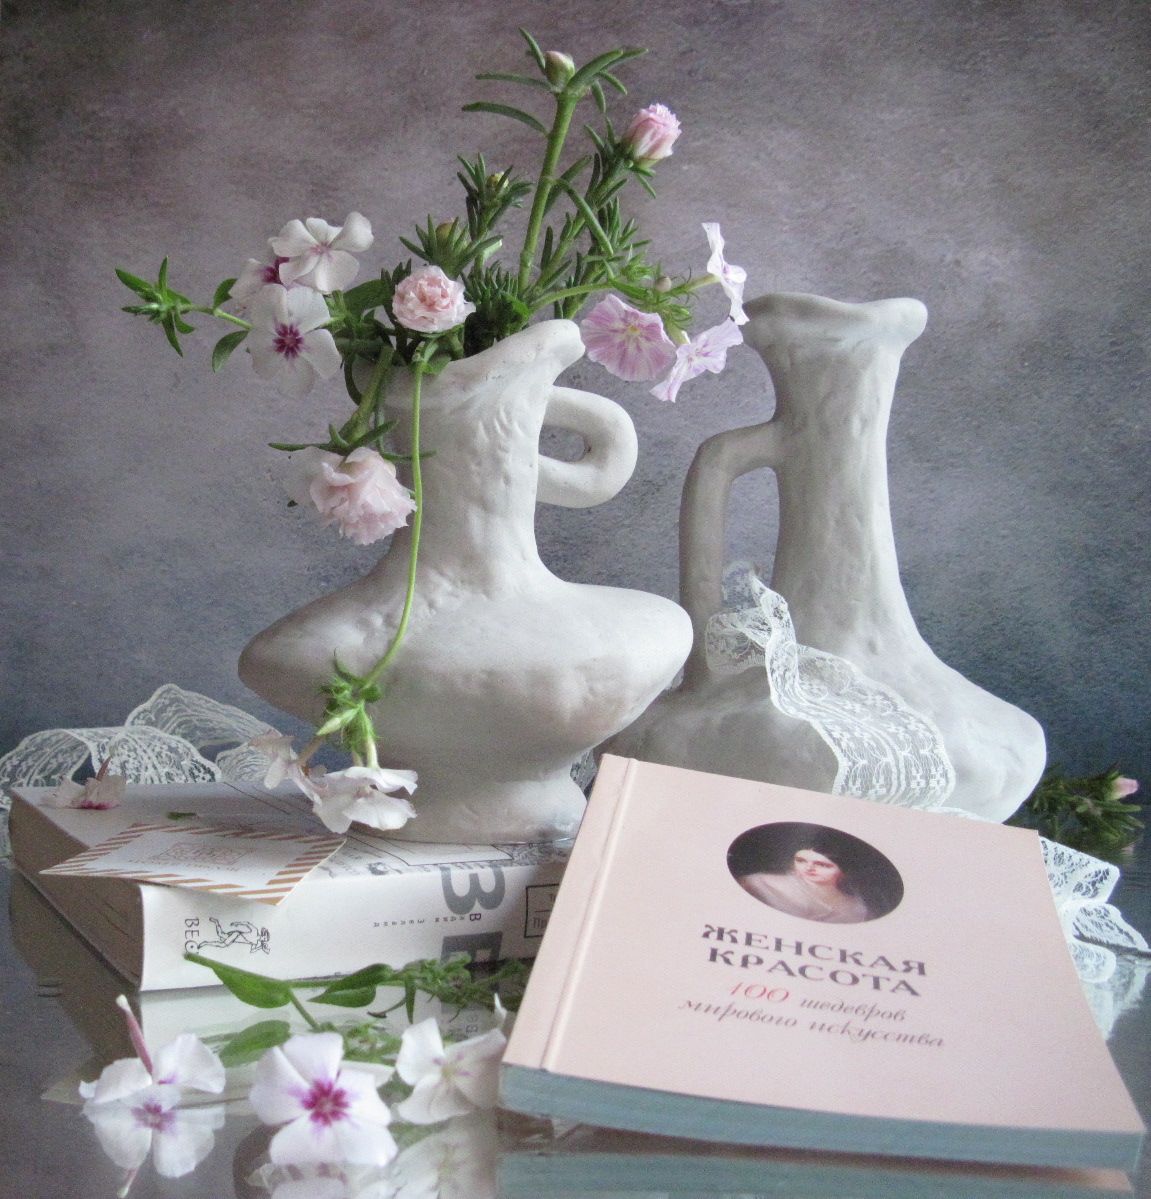 цветы, флоксы, портулак, керамика, книги, кружево, Наталия Тихомирова